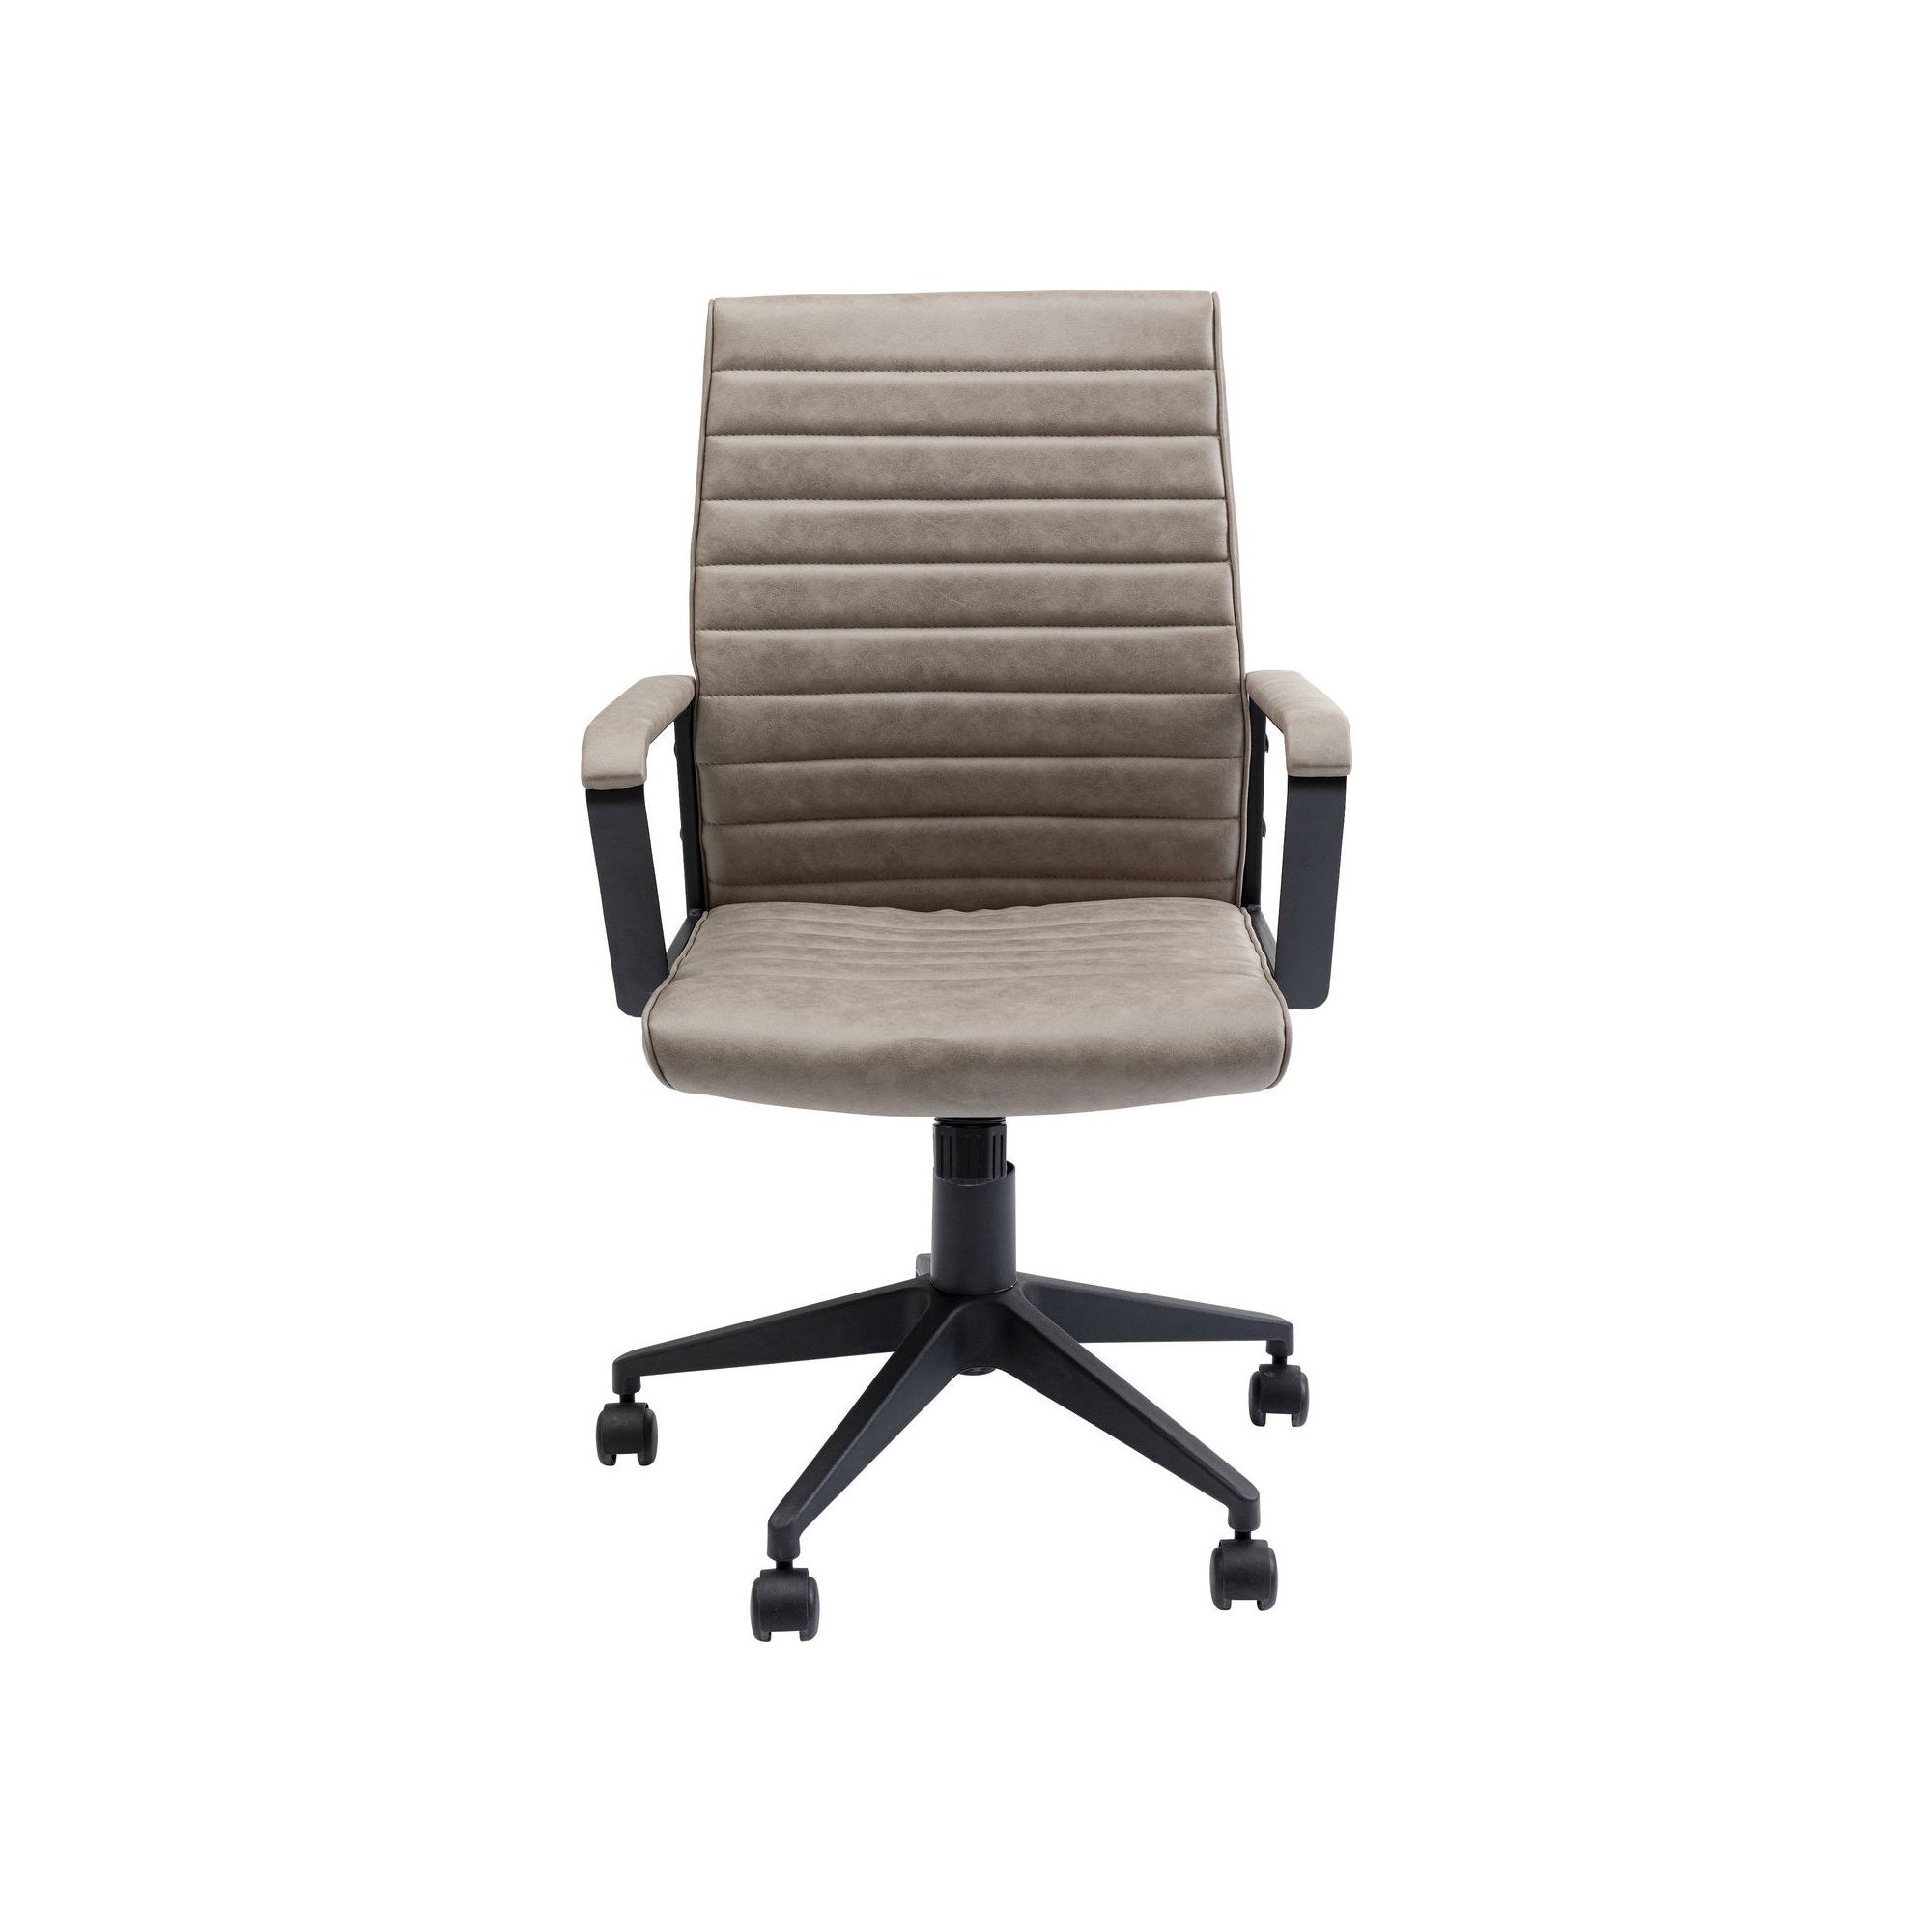 Chaise de bureau Labora marron clair Kare Design